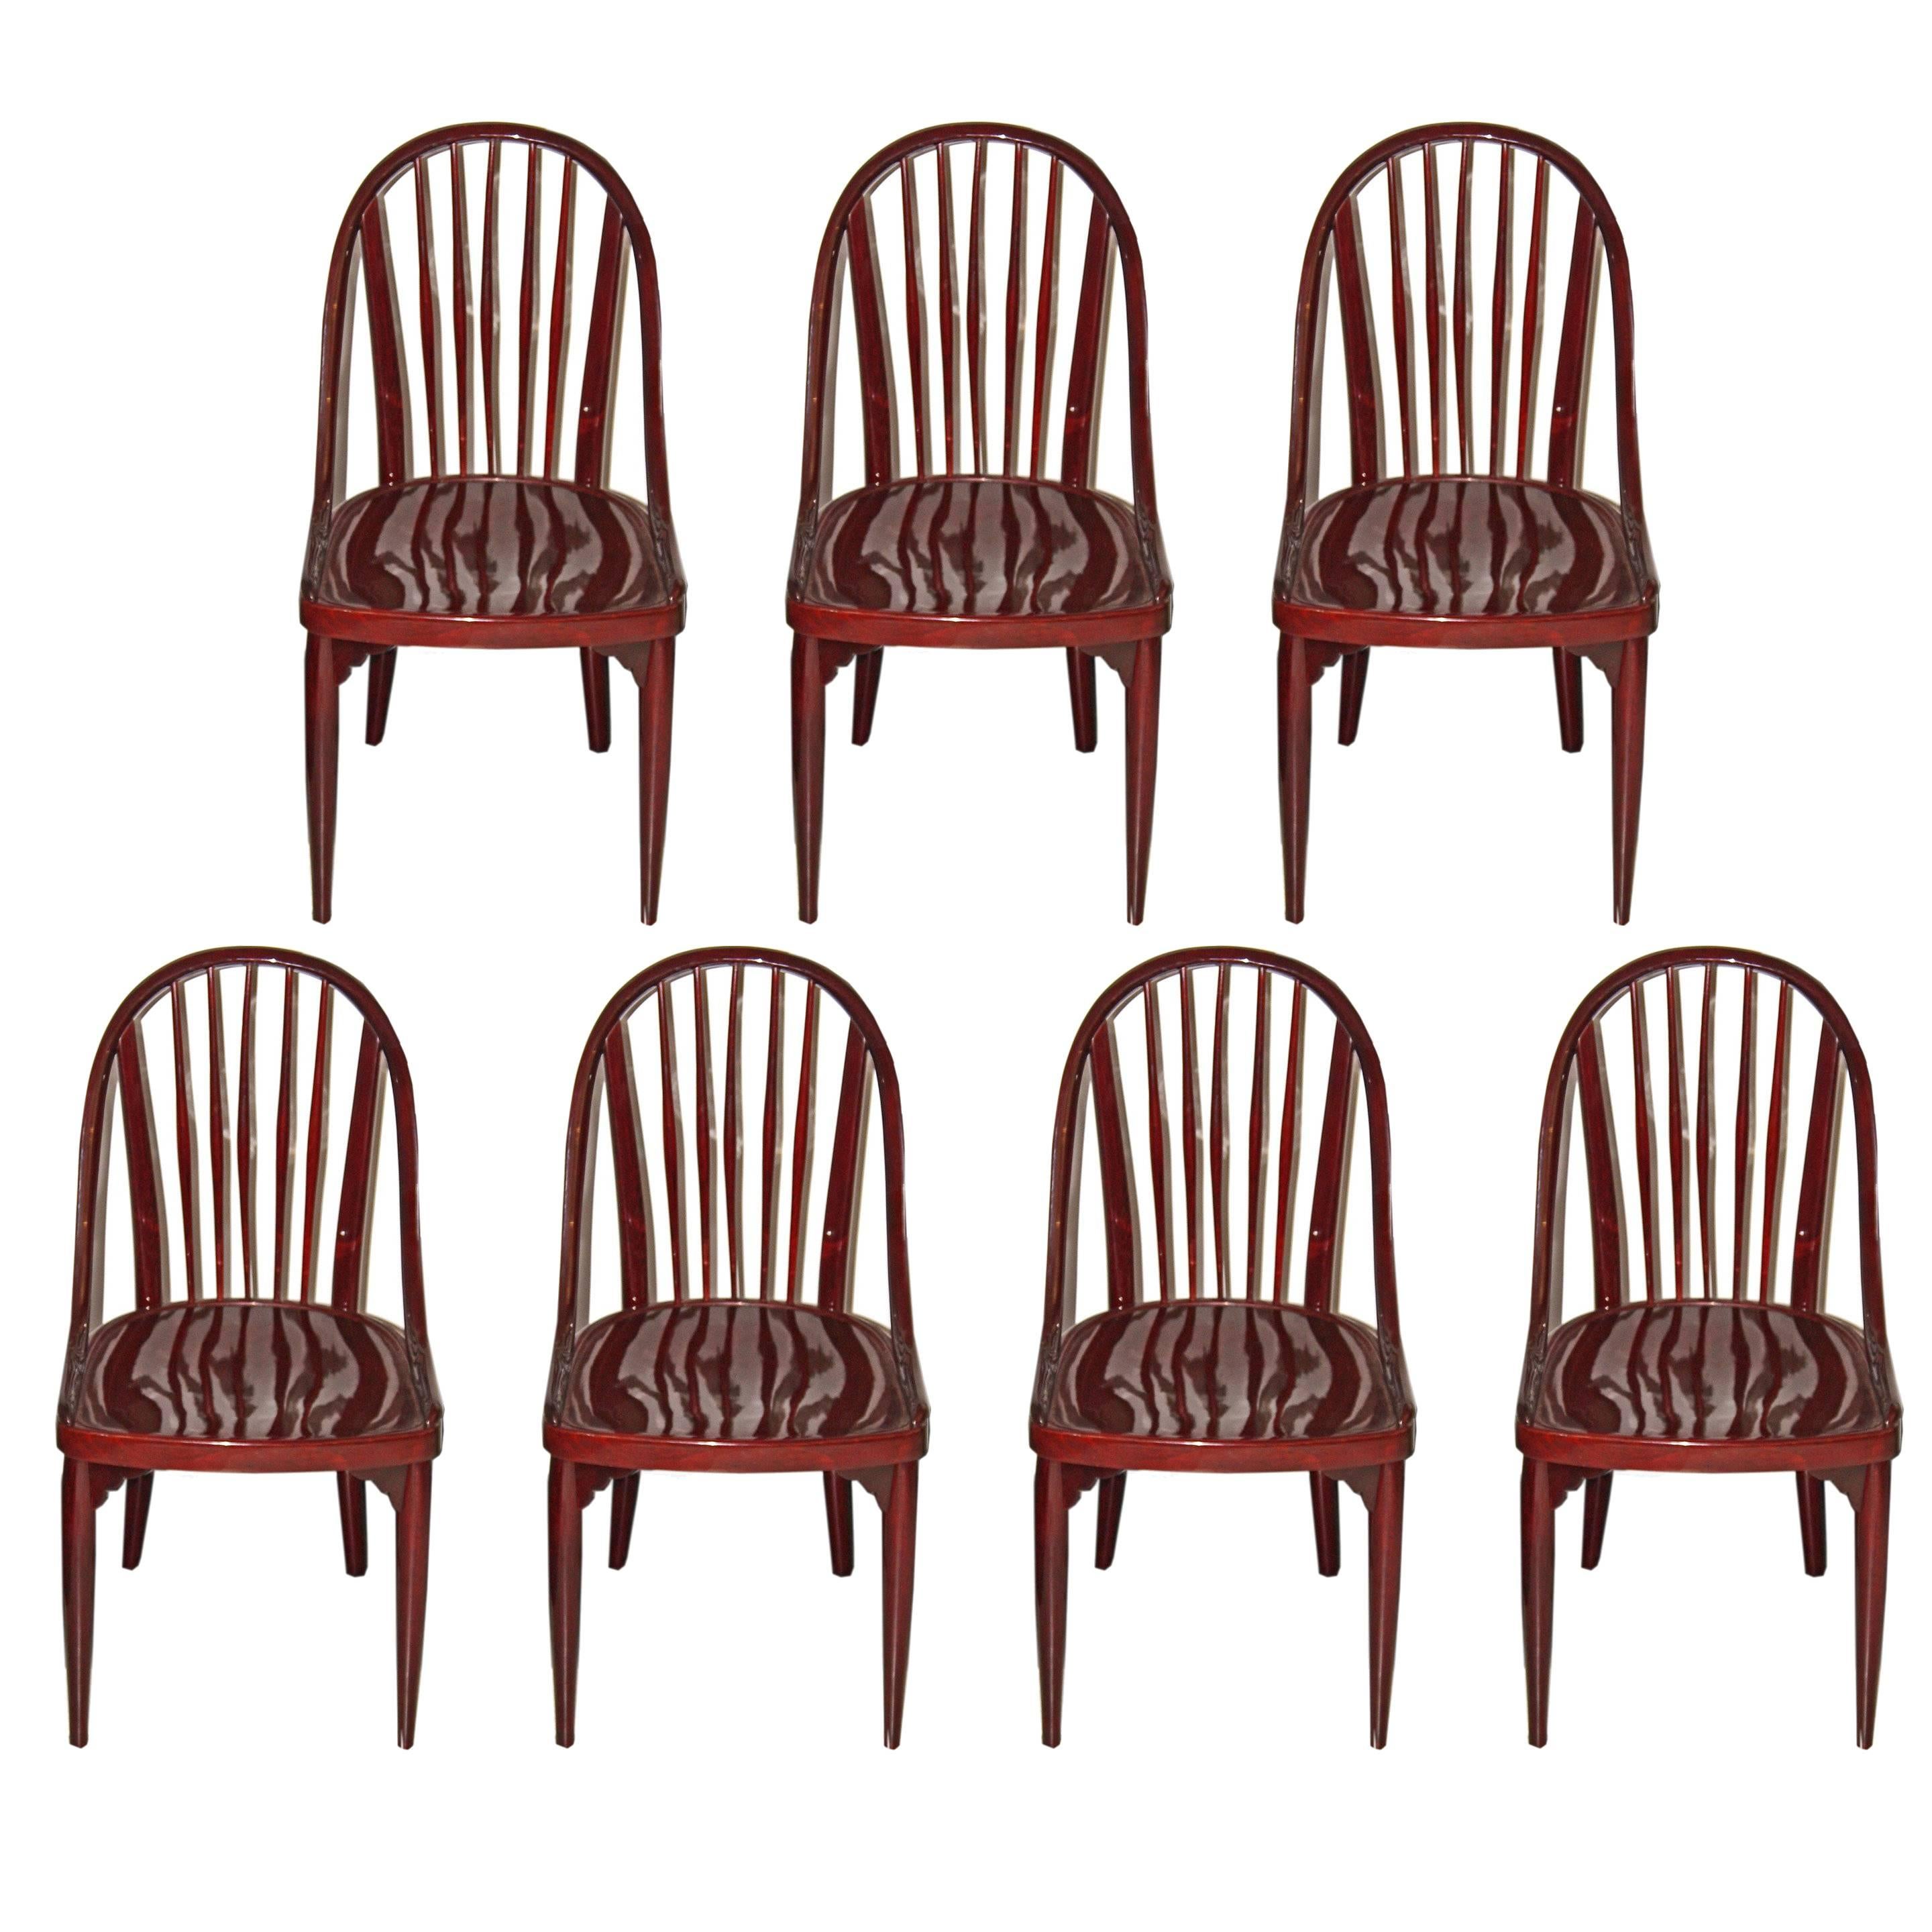 Thonet Bentwood Set Seven Chairs Design by Hoffmann or Prutscher made circa 1925